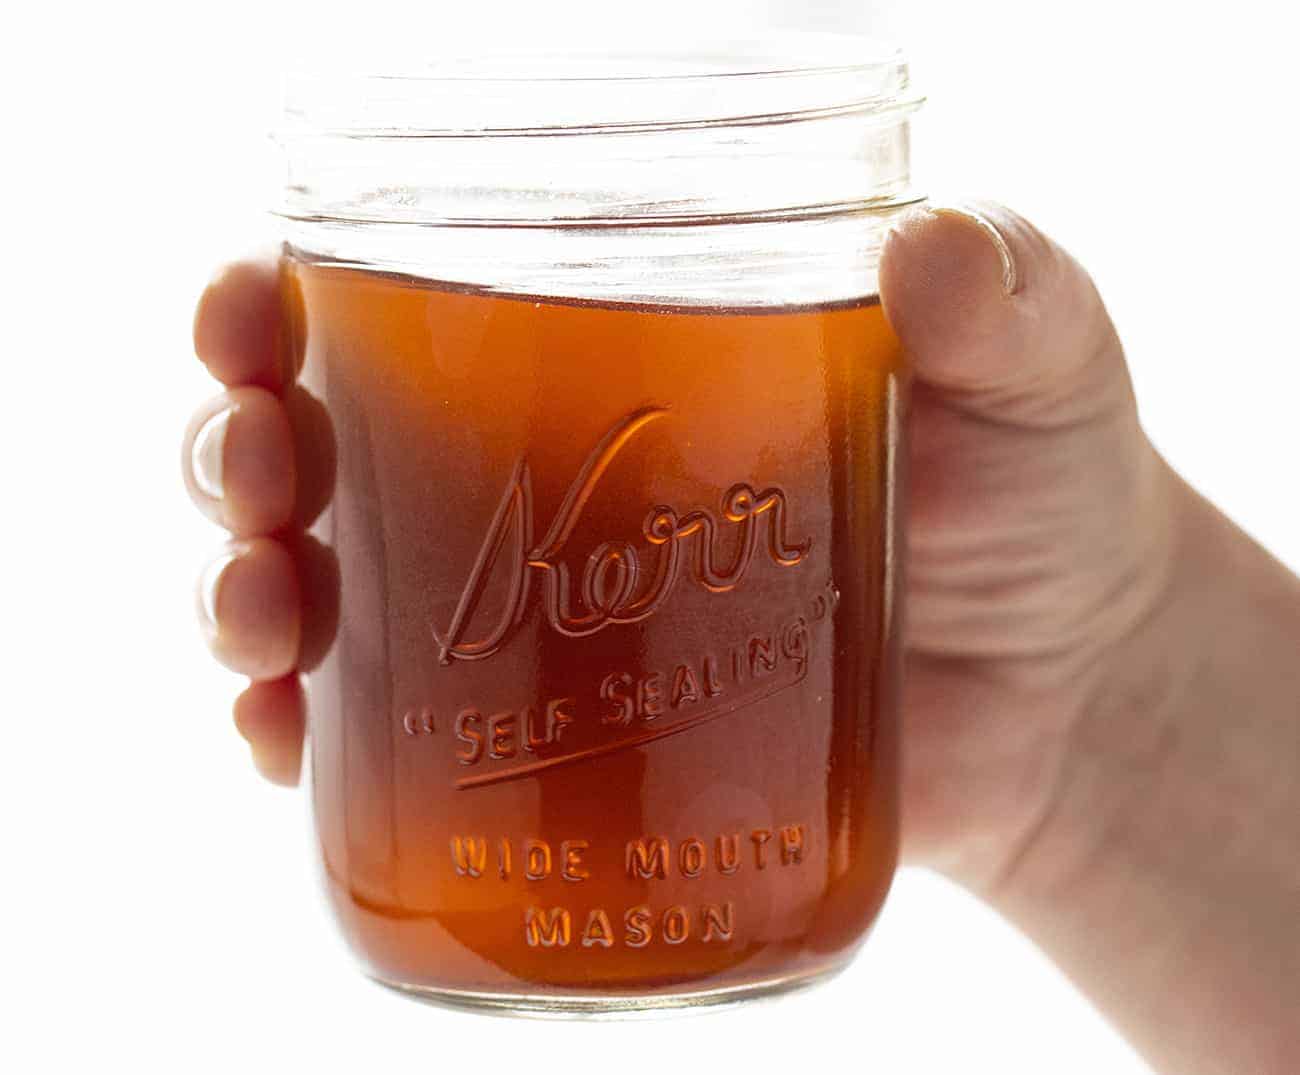 Hand holding jar of Cinnamon Apple Moonshine